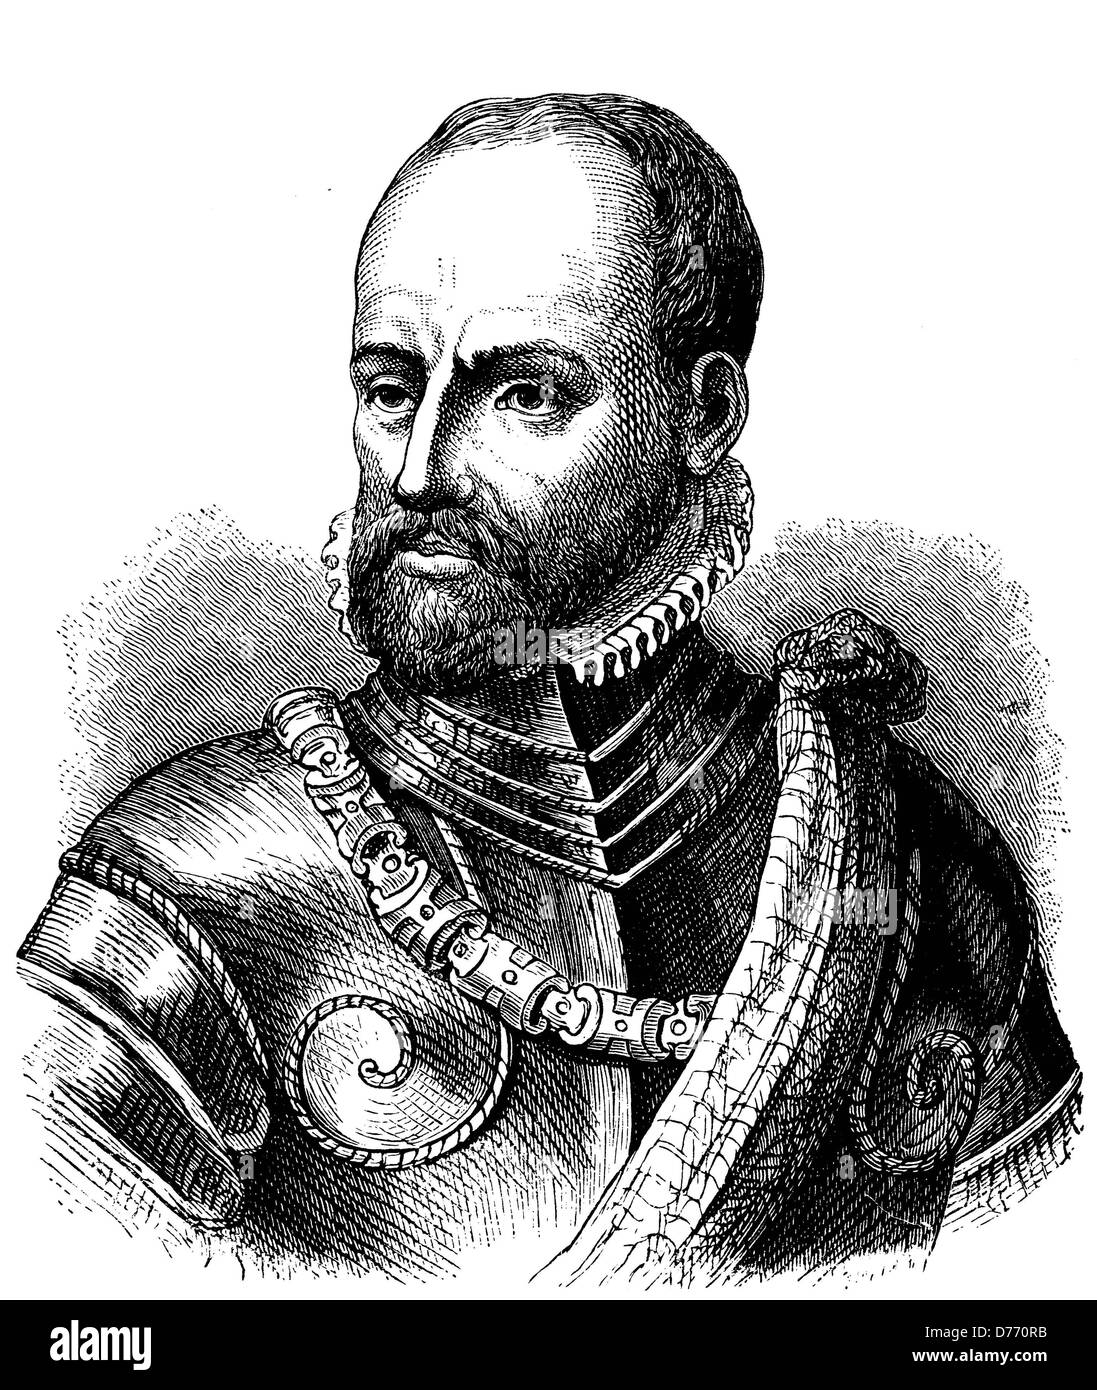 Philippe de Montmorency, Graf von Horn, 1518-1568, niederländische Admiral, Freiheitskämpfer, Ritter des Ordens vom Goldenen Vlies, h Stockfoto